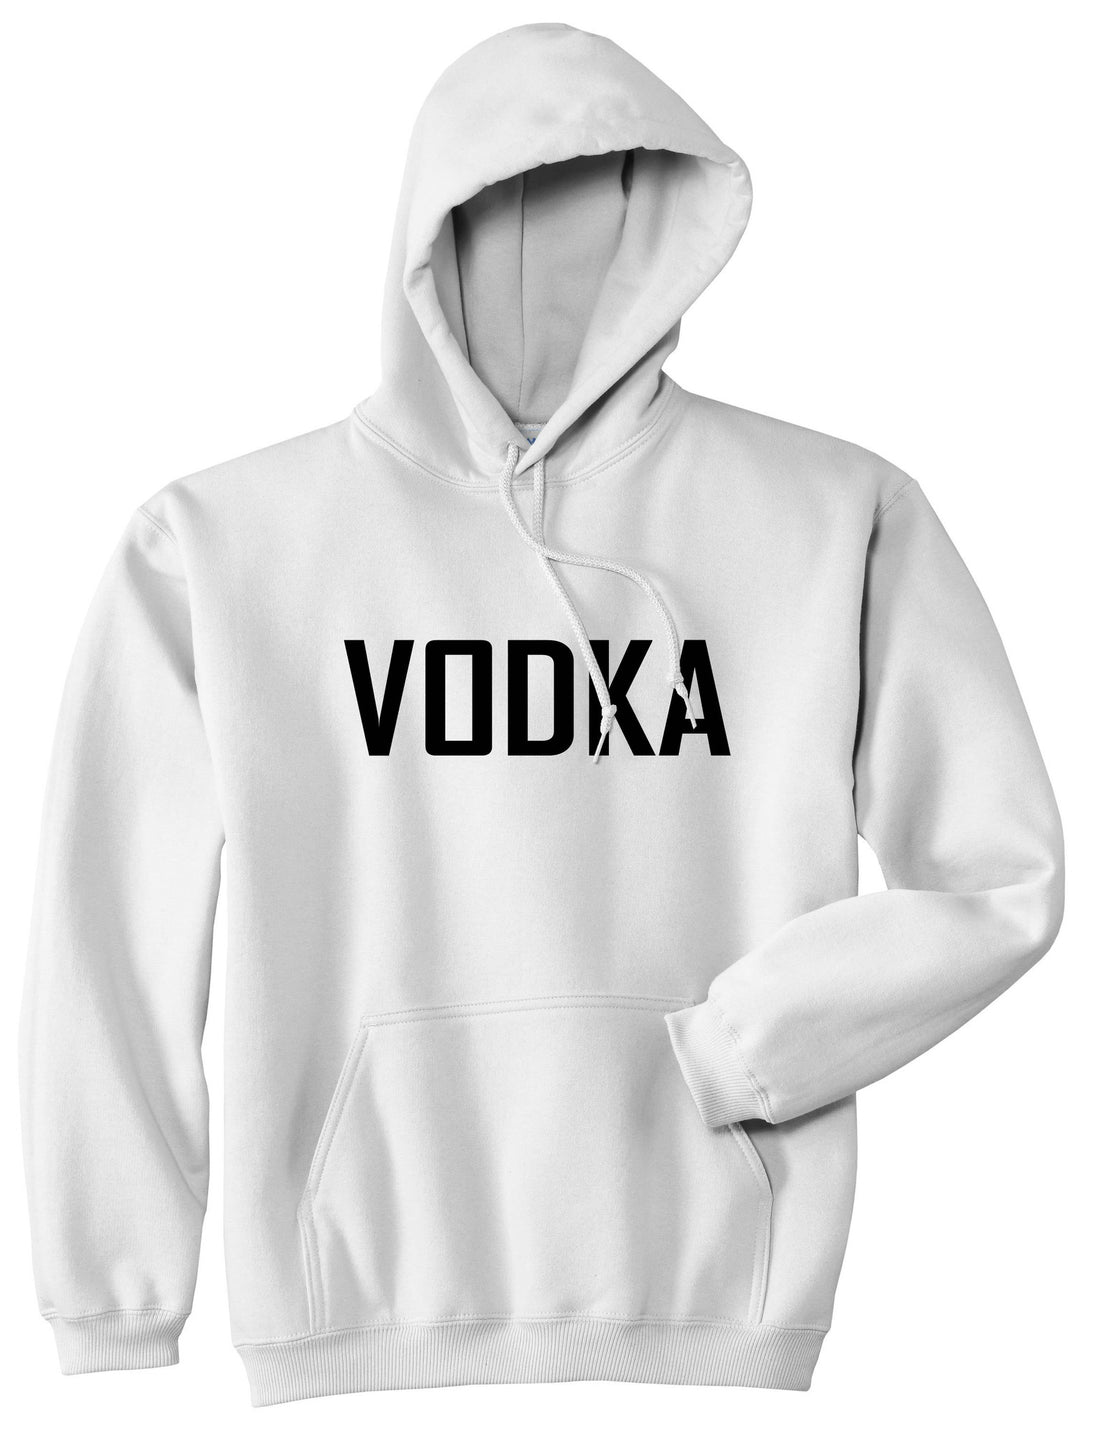 Vodka Pullover Hoodie Hoody by Kings Of NY